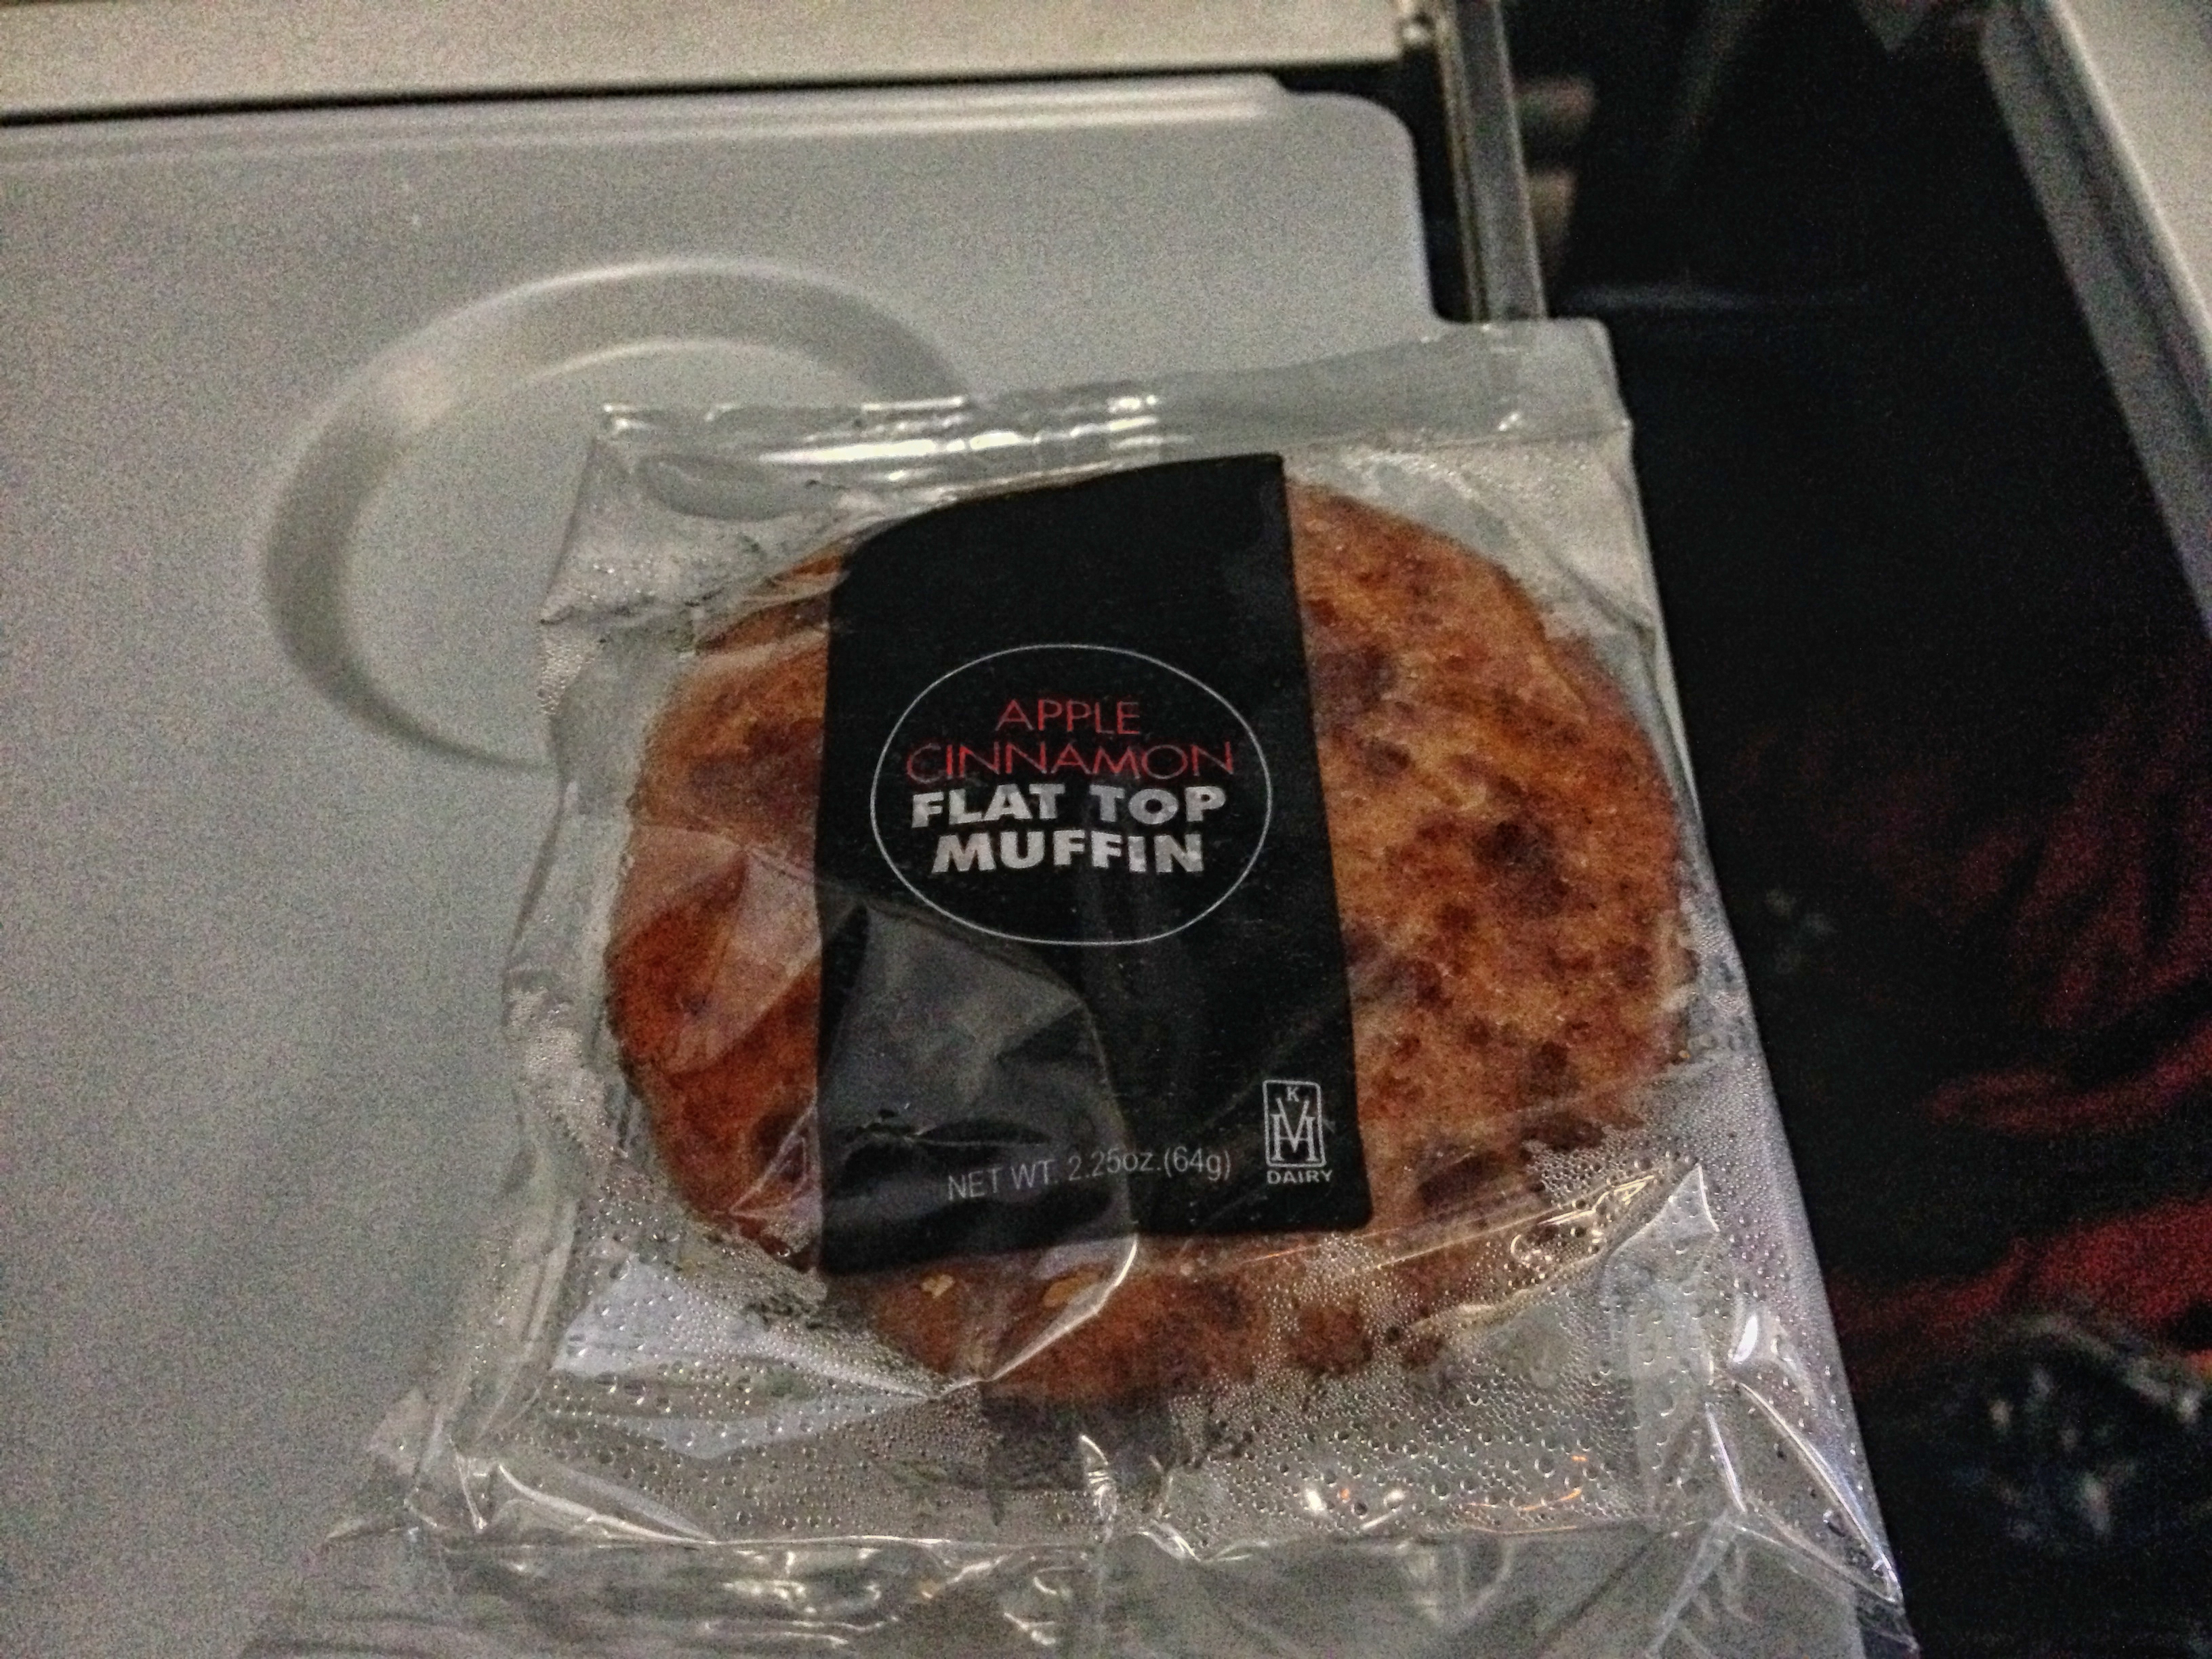 a muffin in a plastic bag